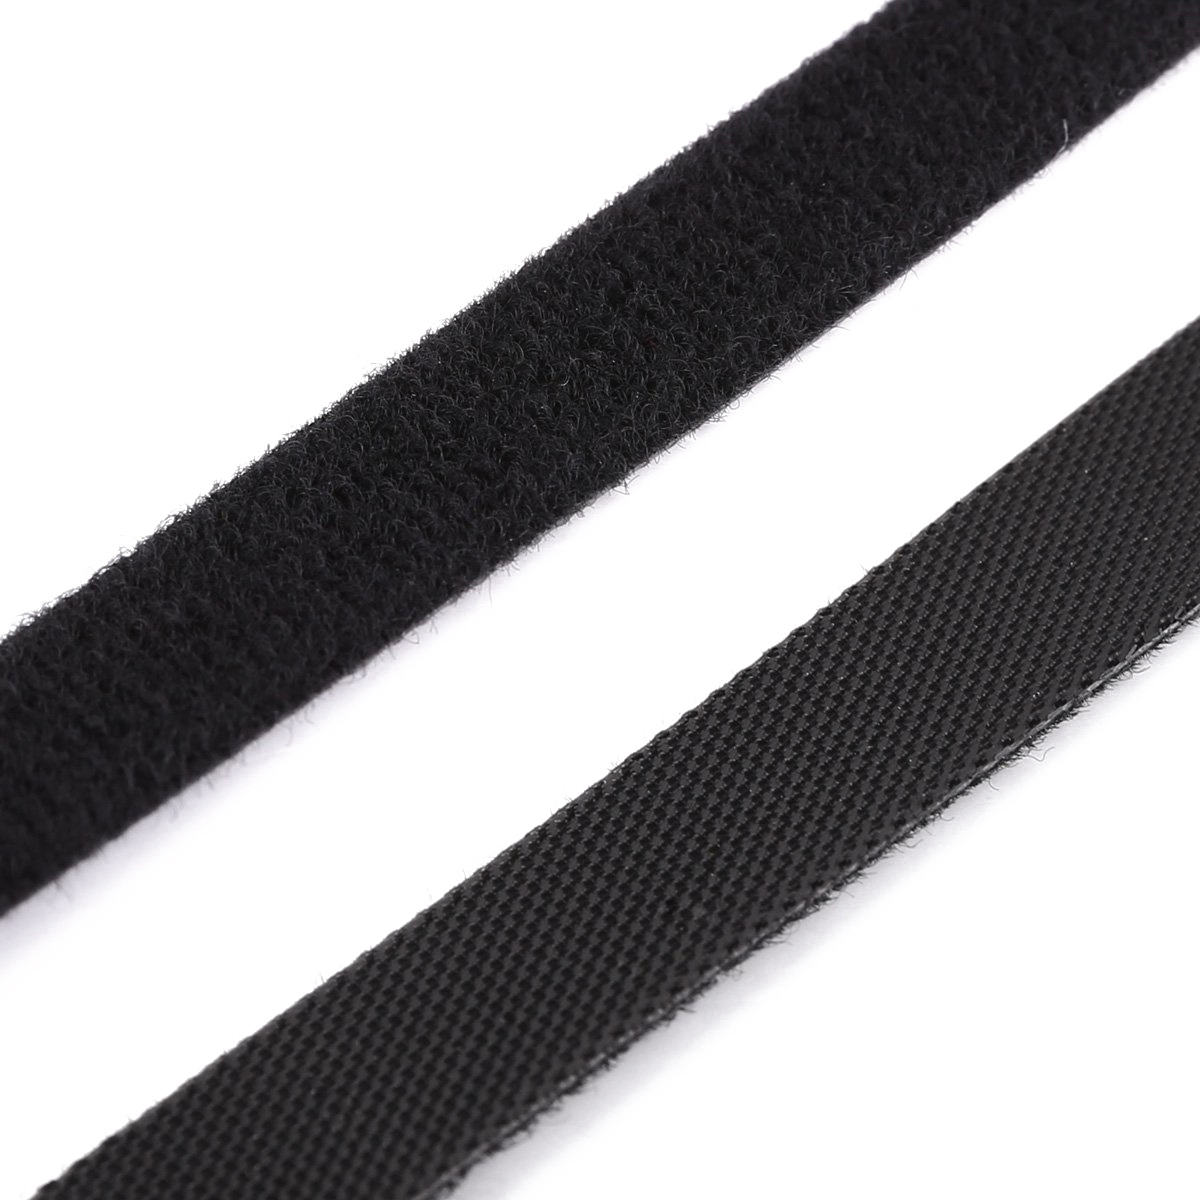 100 PCS Reusable Black Nylon Cable Tie